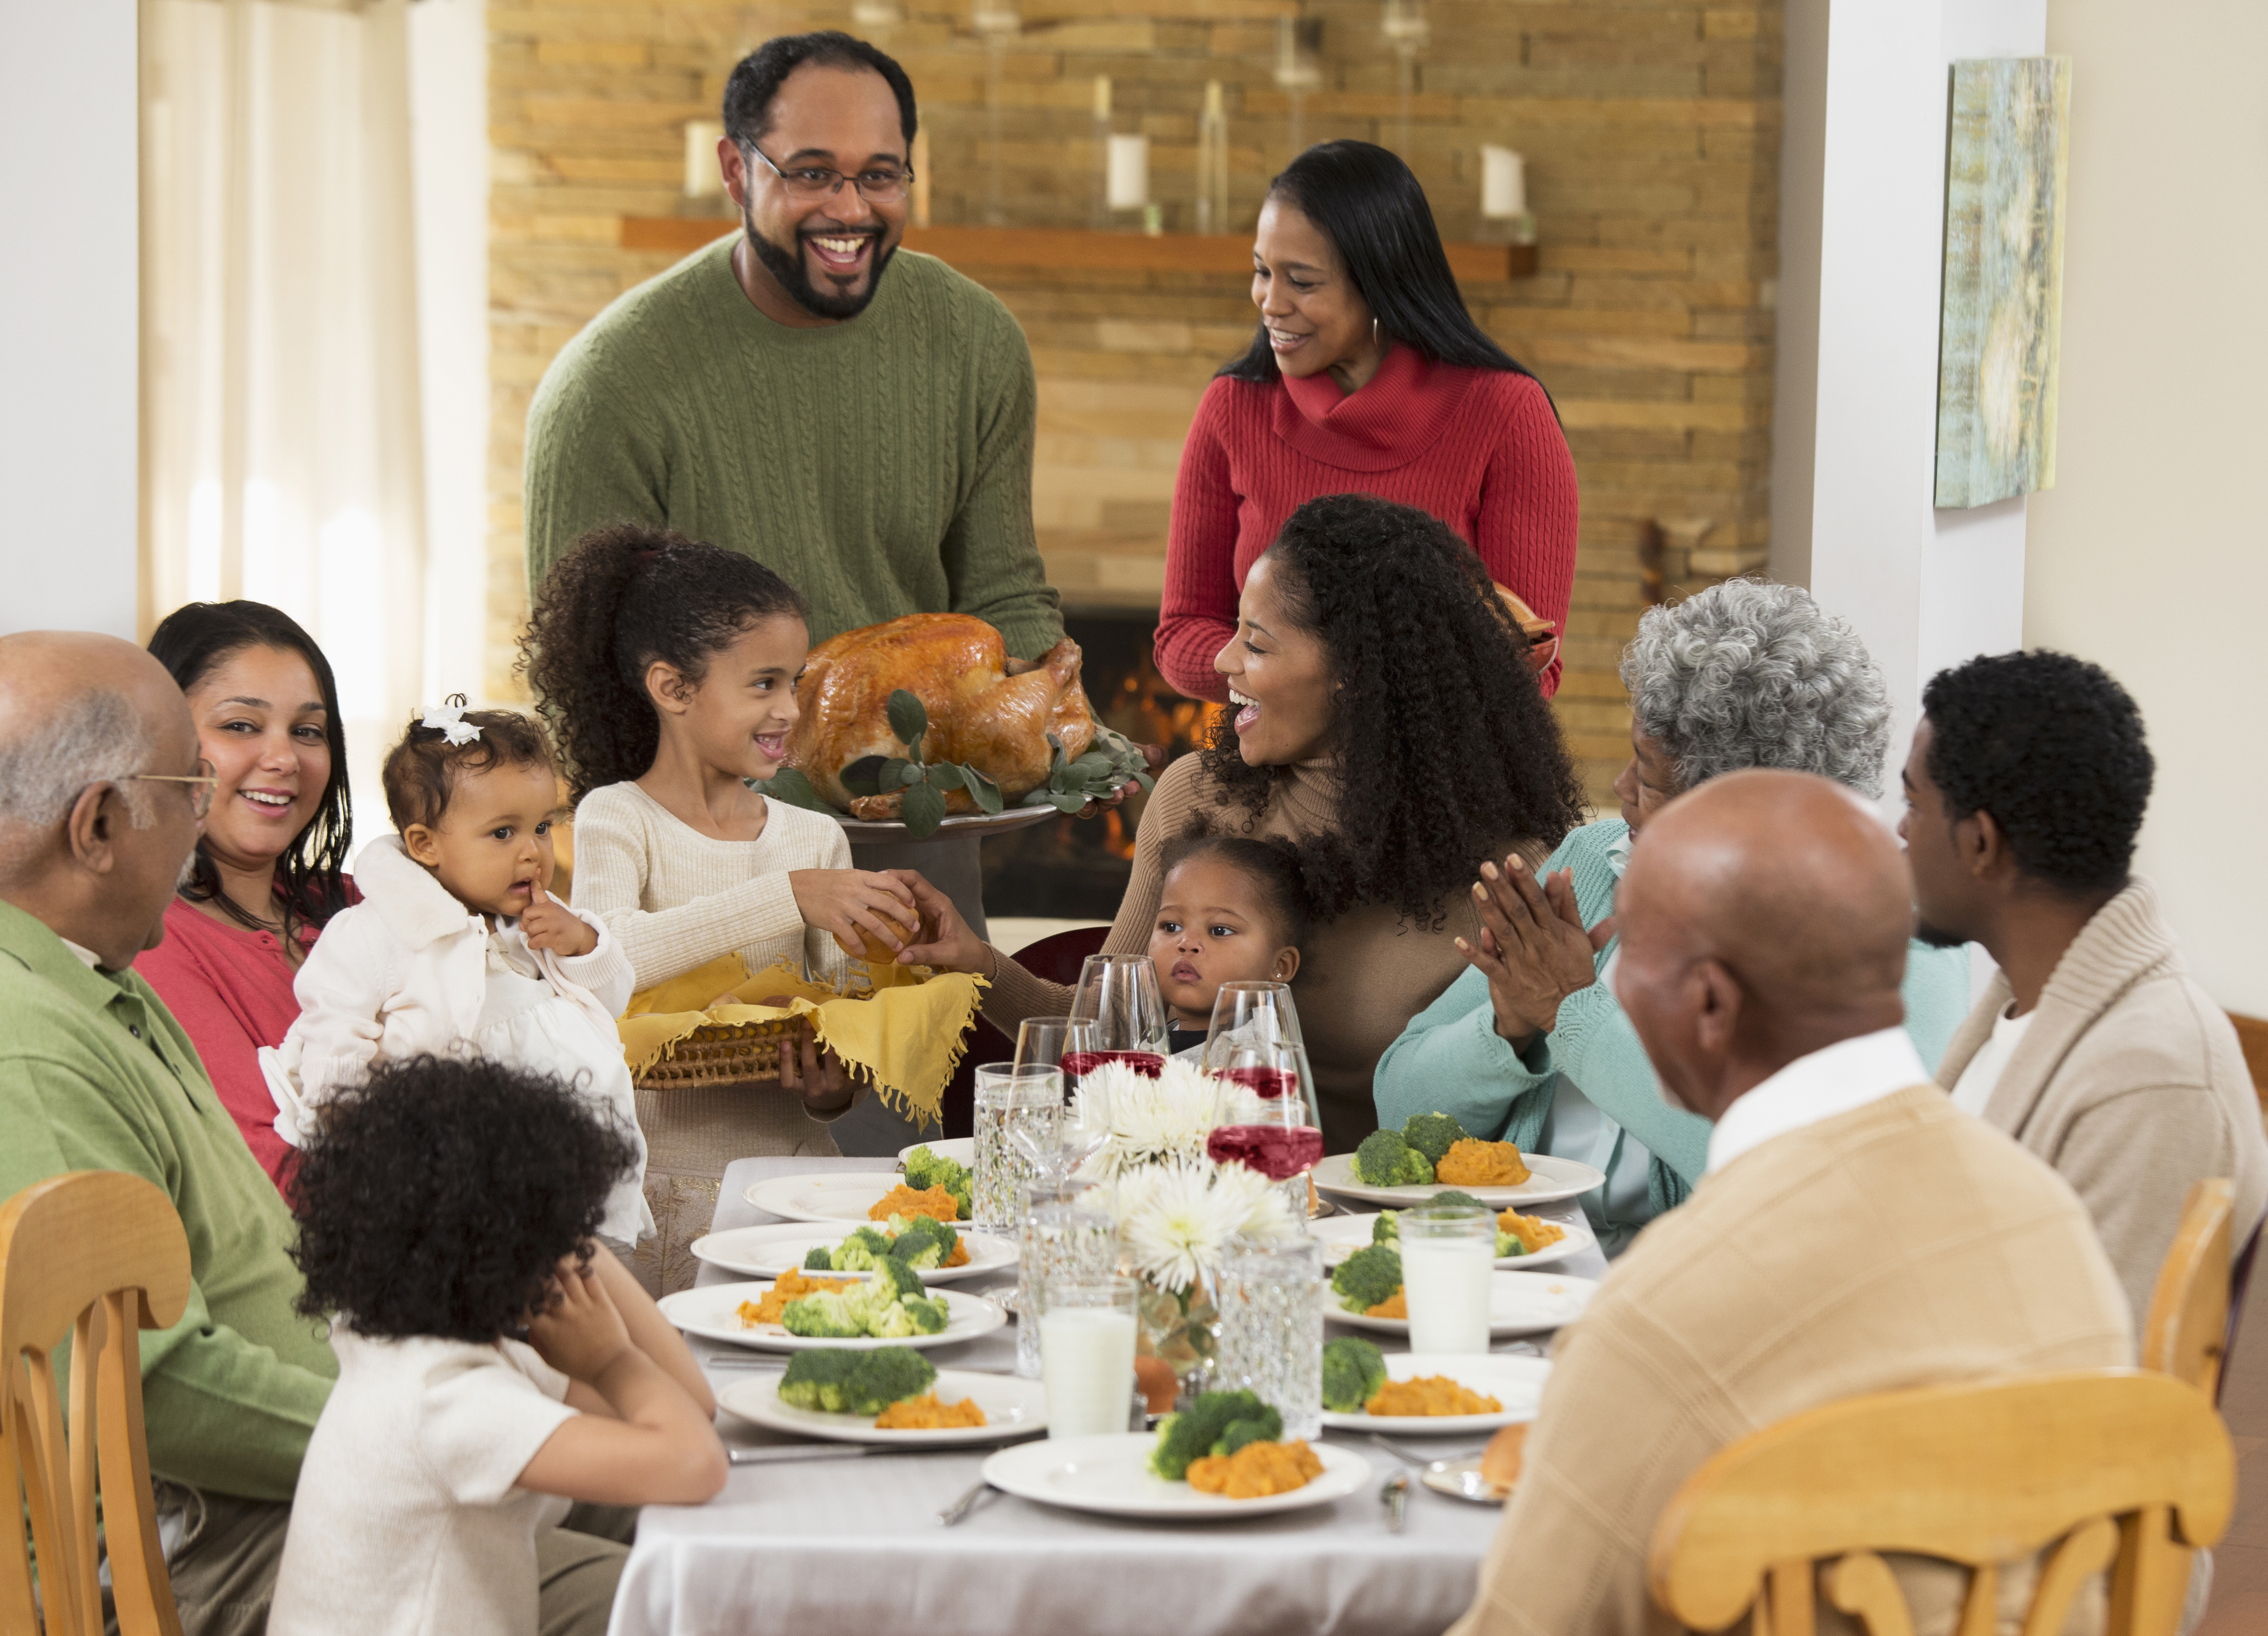 Famille mangeant le repas de Thanksgiving | Source : Getty Images